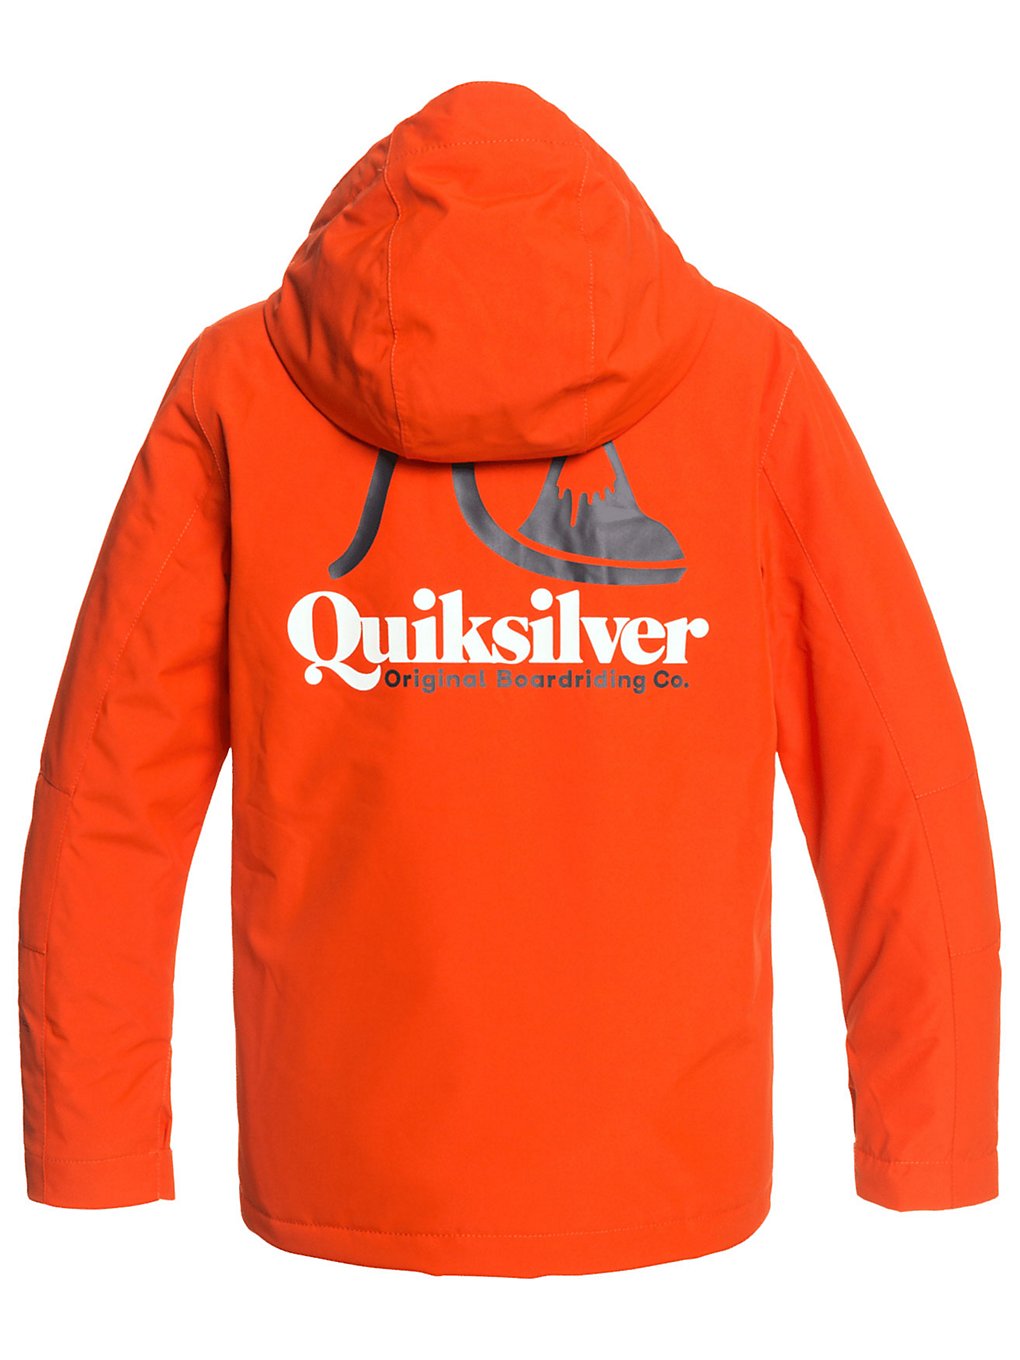 Quiksilver In The Hood Jacket pureed pumpkin kaufen